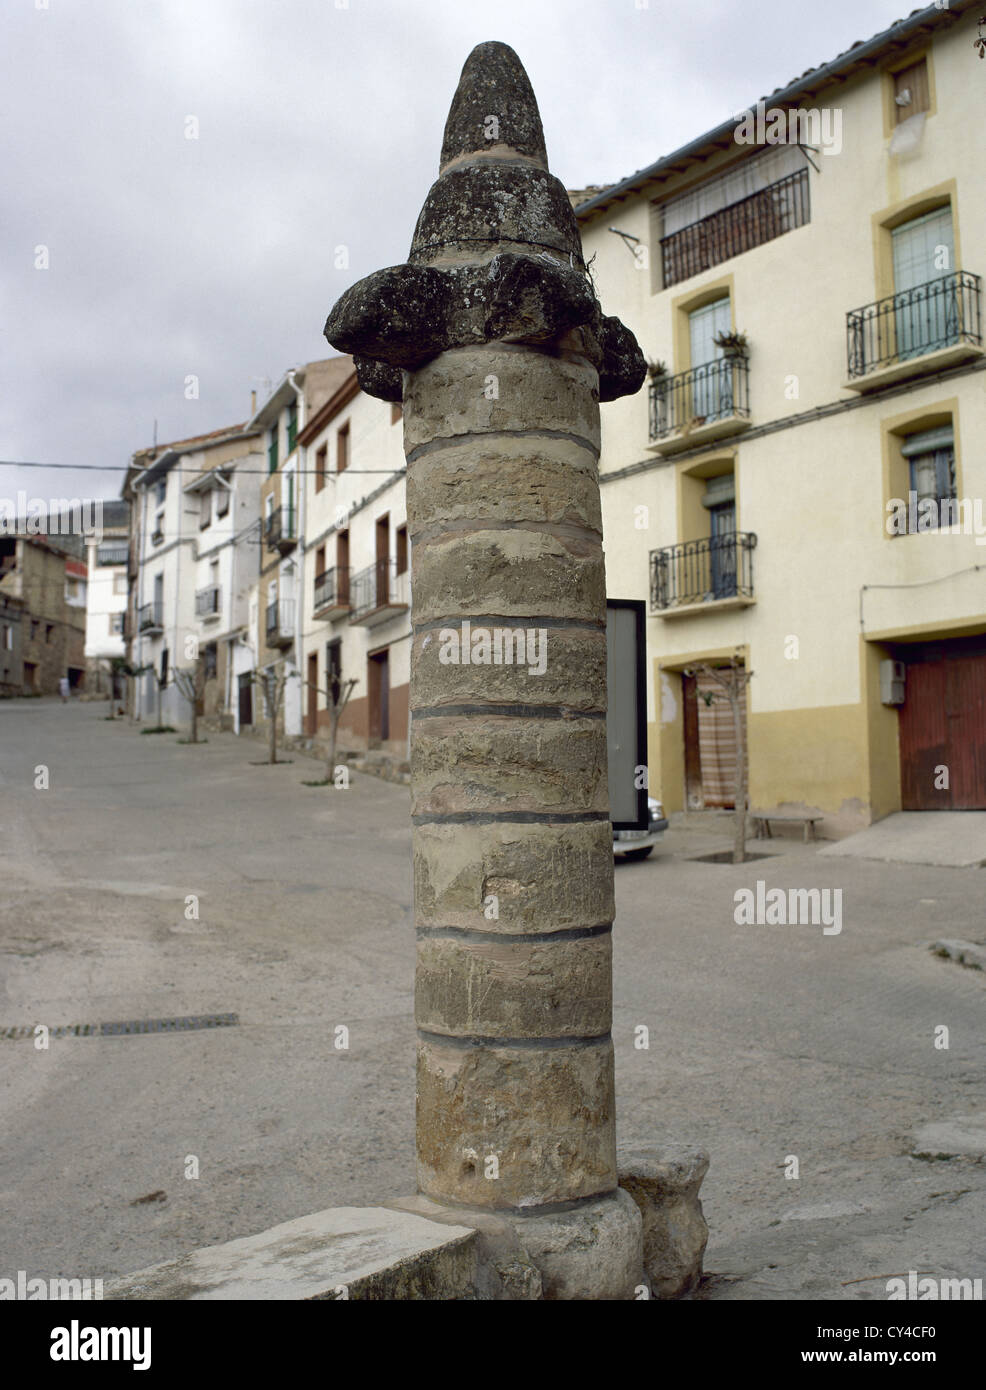 Pilori des sanctions. Moyen-Âge. Muro de Aguas. La Rioja. L'Espagne. Banque D'Images